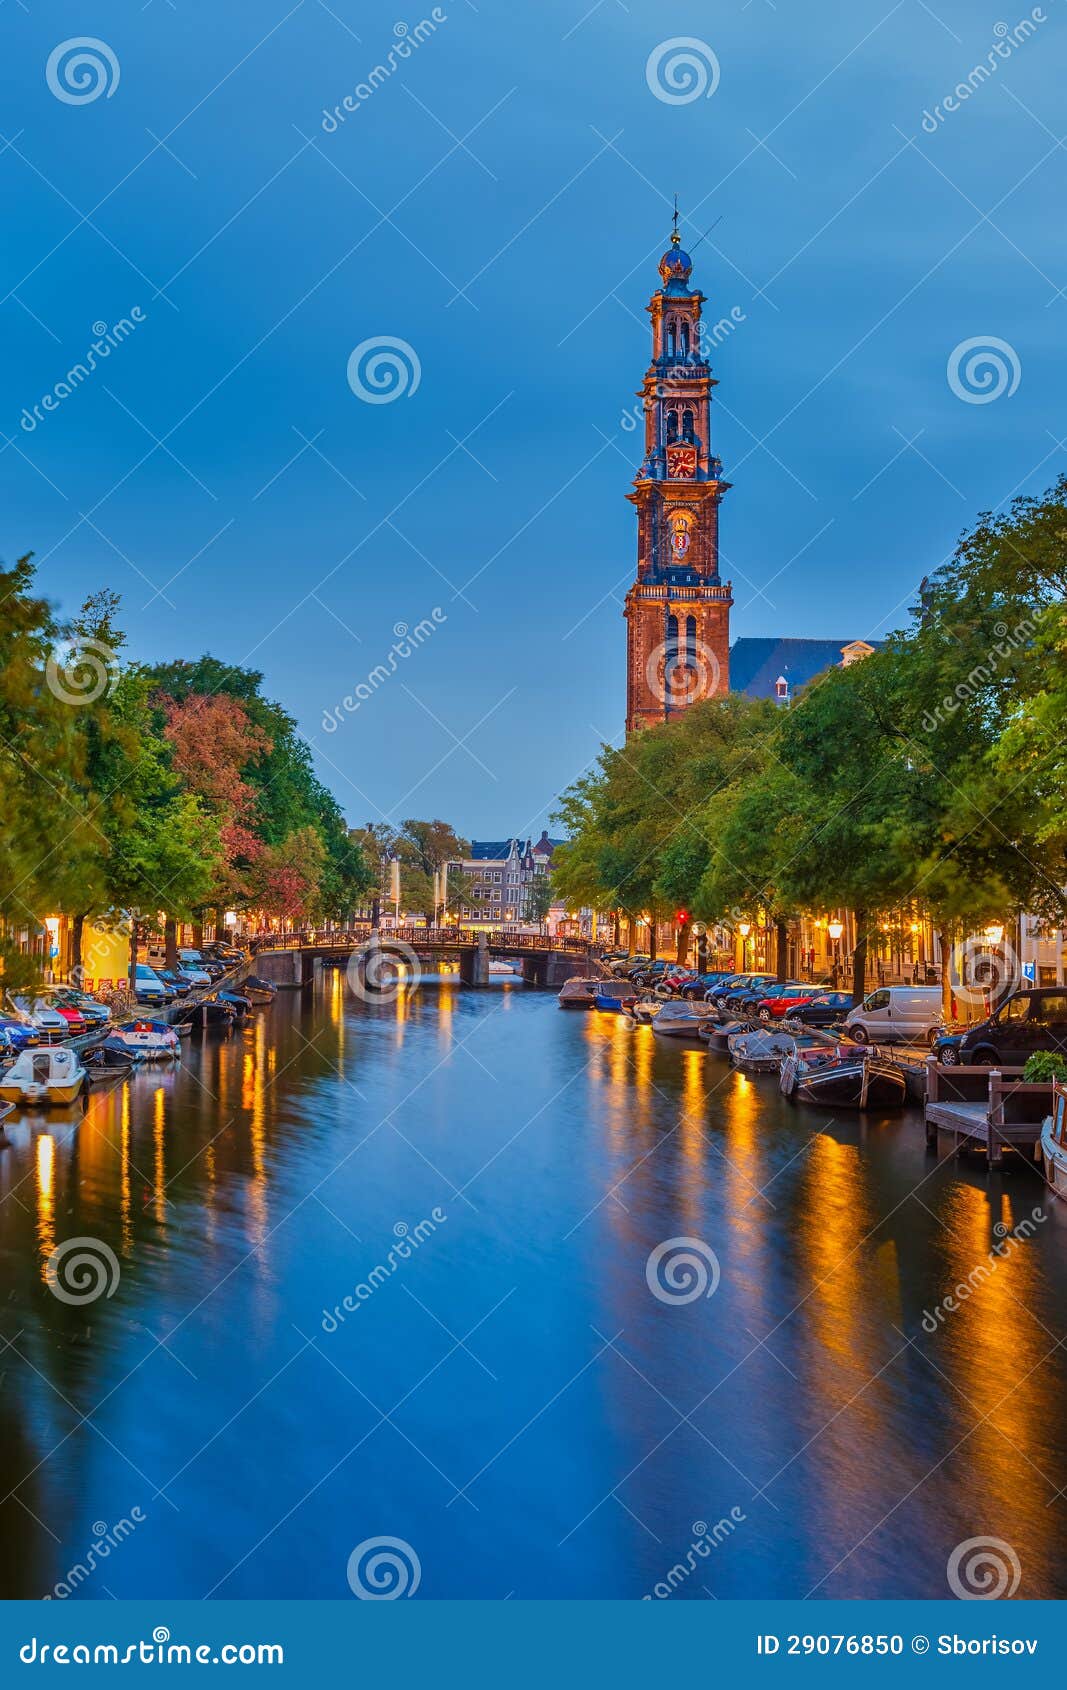 Zachodni kościół w Amsterdam. Zachodni kościół na Prinsengracht kanale w Amsterdam